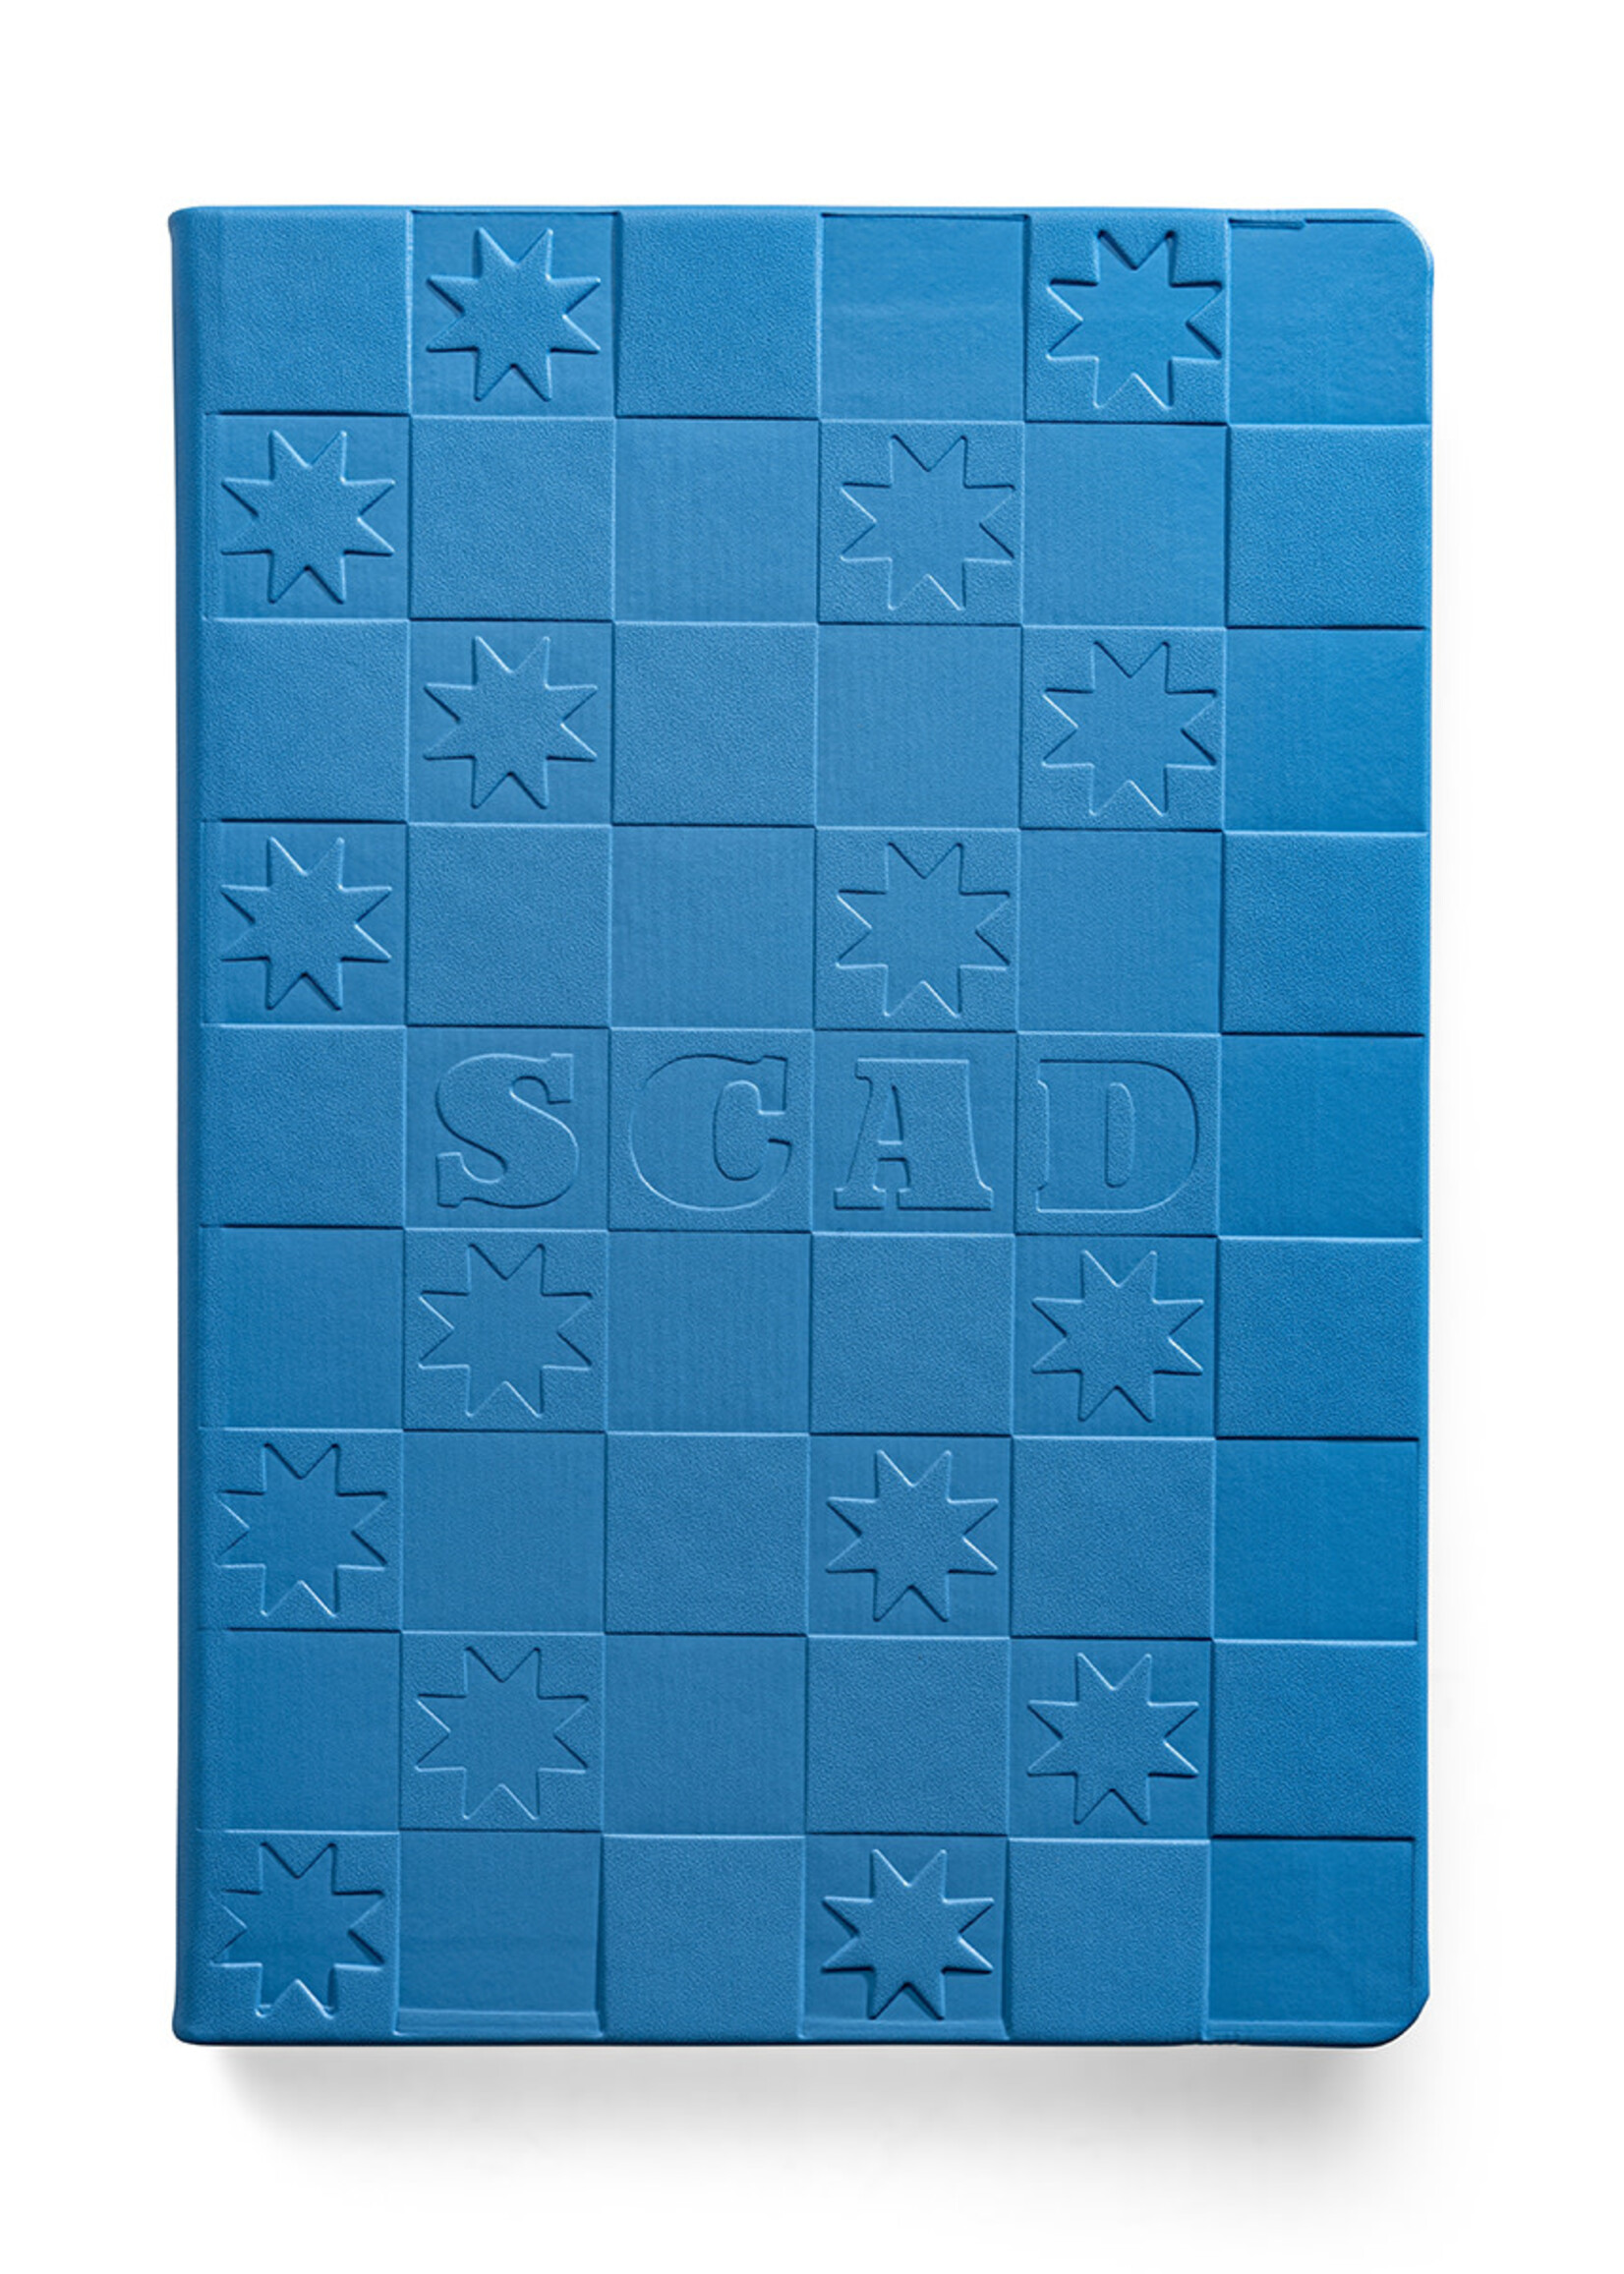 SCAD SCAD Checkerboard, Light Blue, Journal